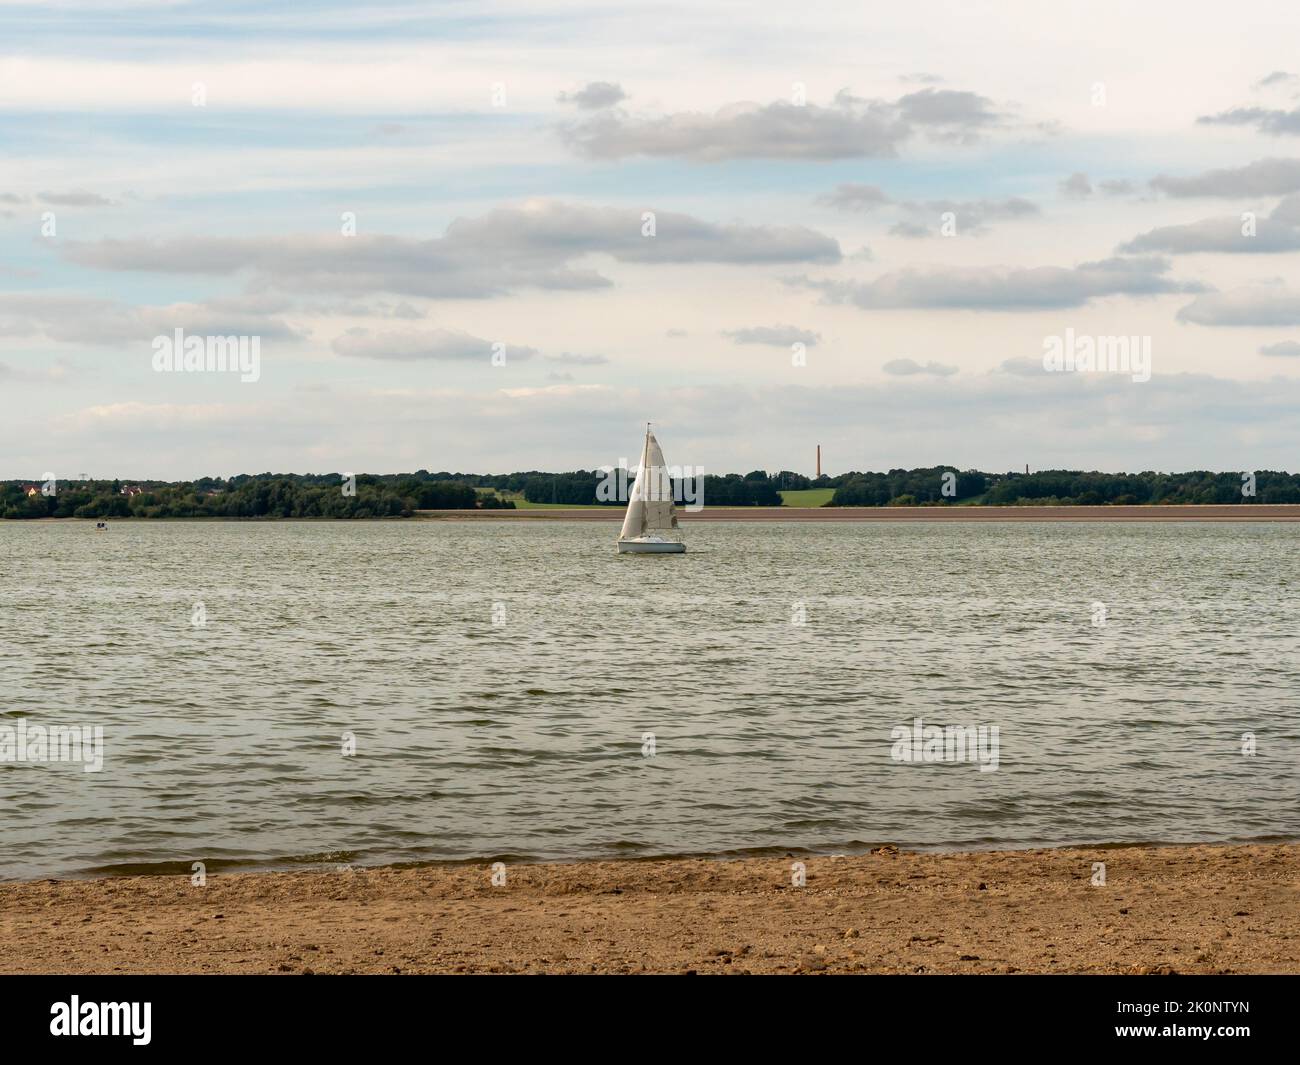 Barca a vela su un lago in Germania. Nave bianca con una grande vela su acque calme. Trasporto in acqua. Paesaggio naturale con una barca al centro. Foto Stock